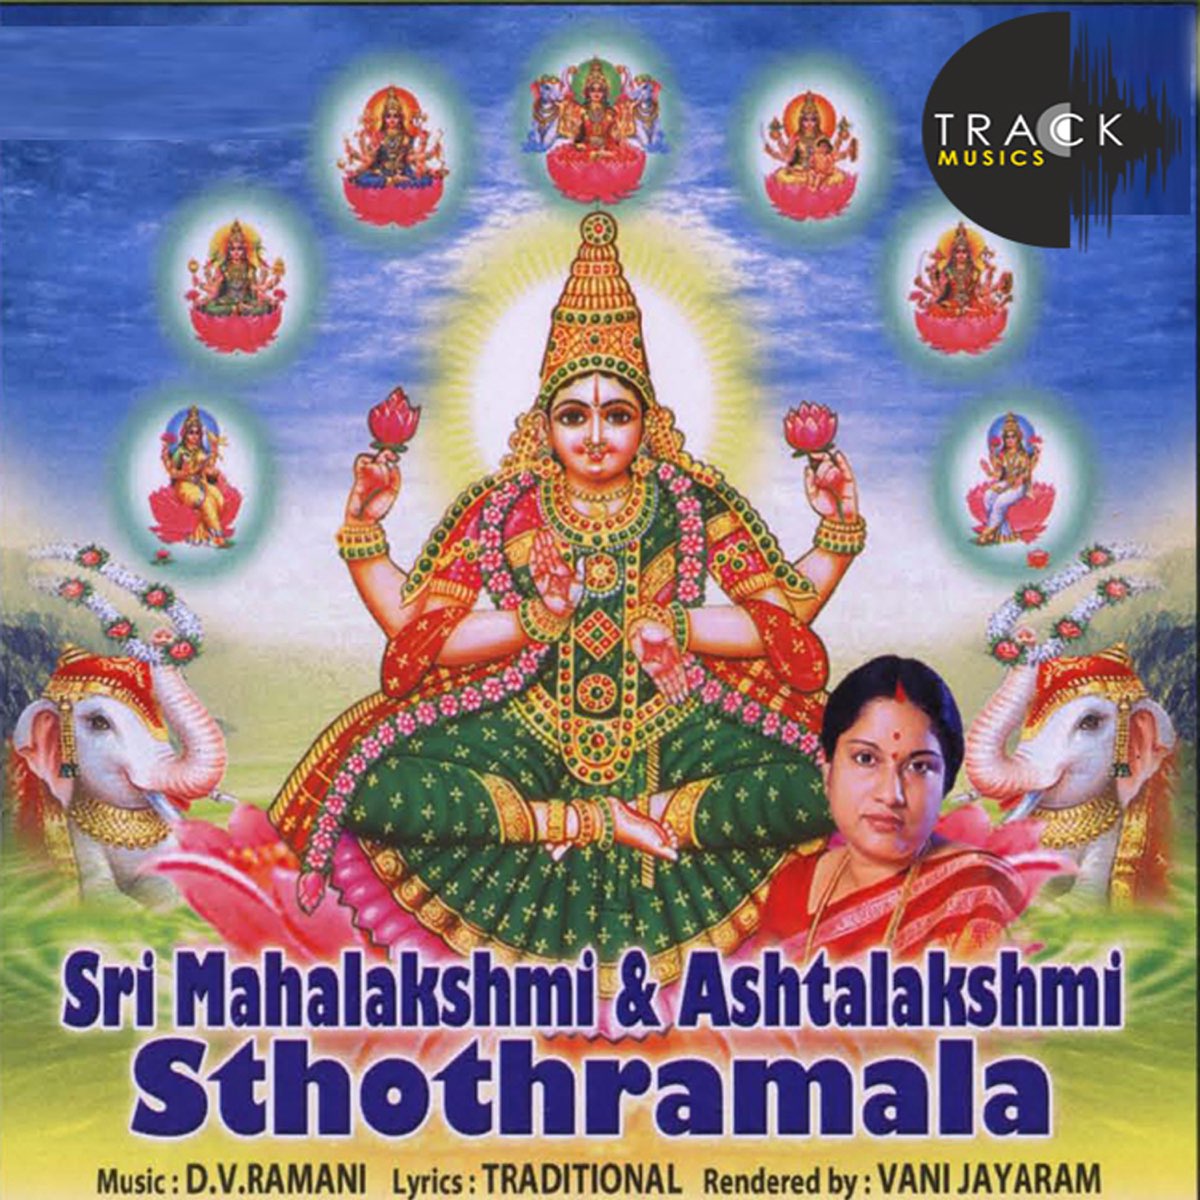 Top 999+ ashtalakshmi images – Amazing Collection ashtalakshmi images ...